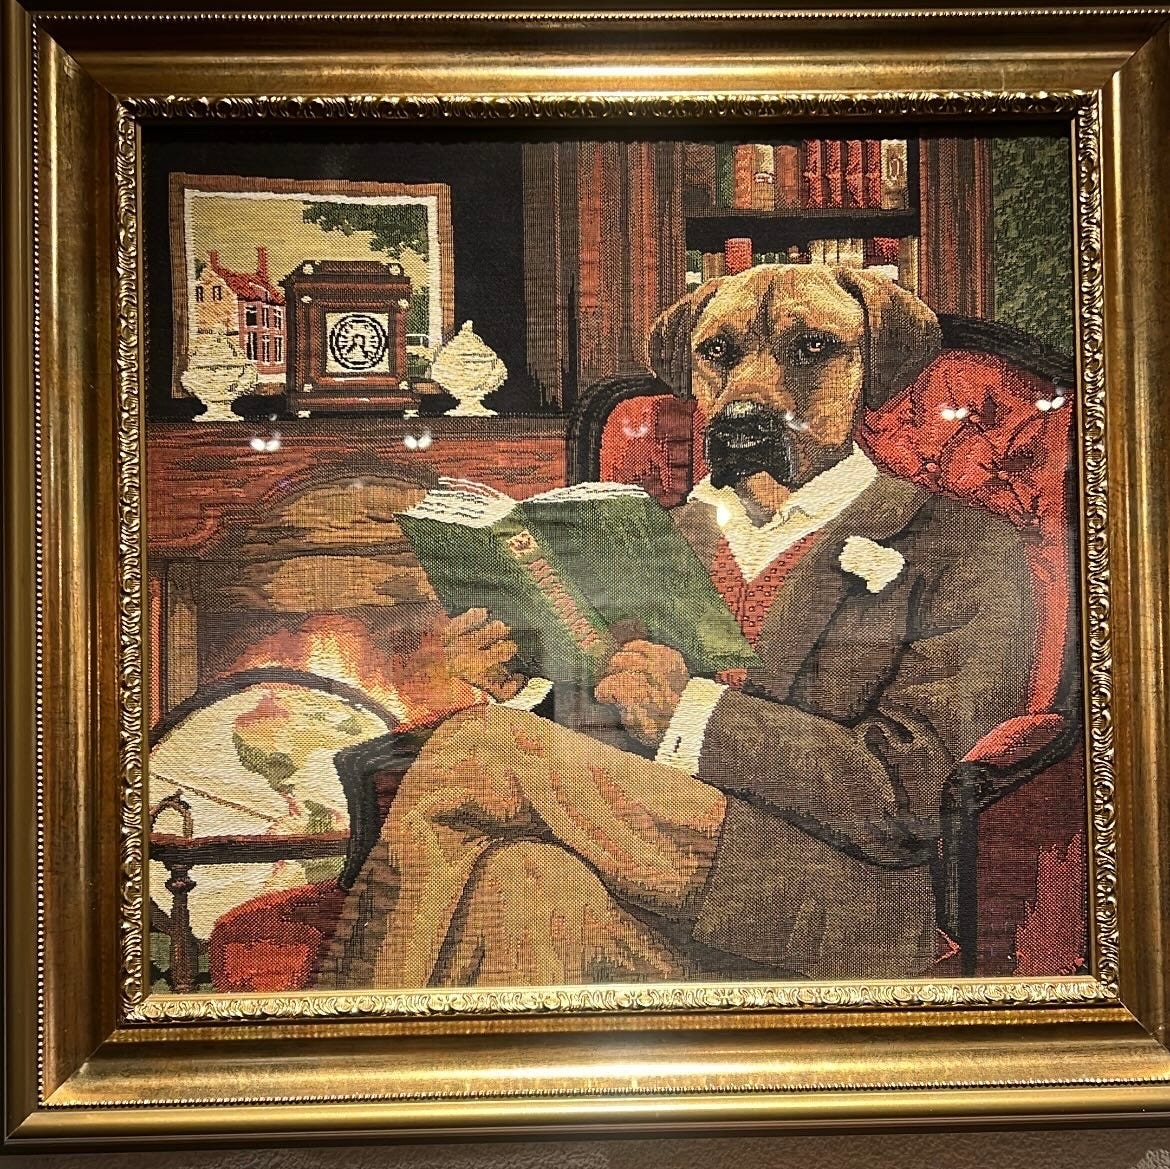 Foto de um quadro de tapaeçaria que mostra um cão todo trajado de senhor, lendo um livro sentado em uma poltrona. O cachorro parece o meu cão Batista.